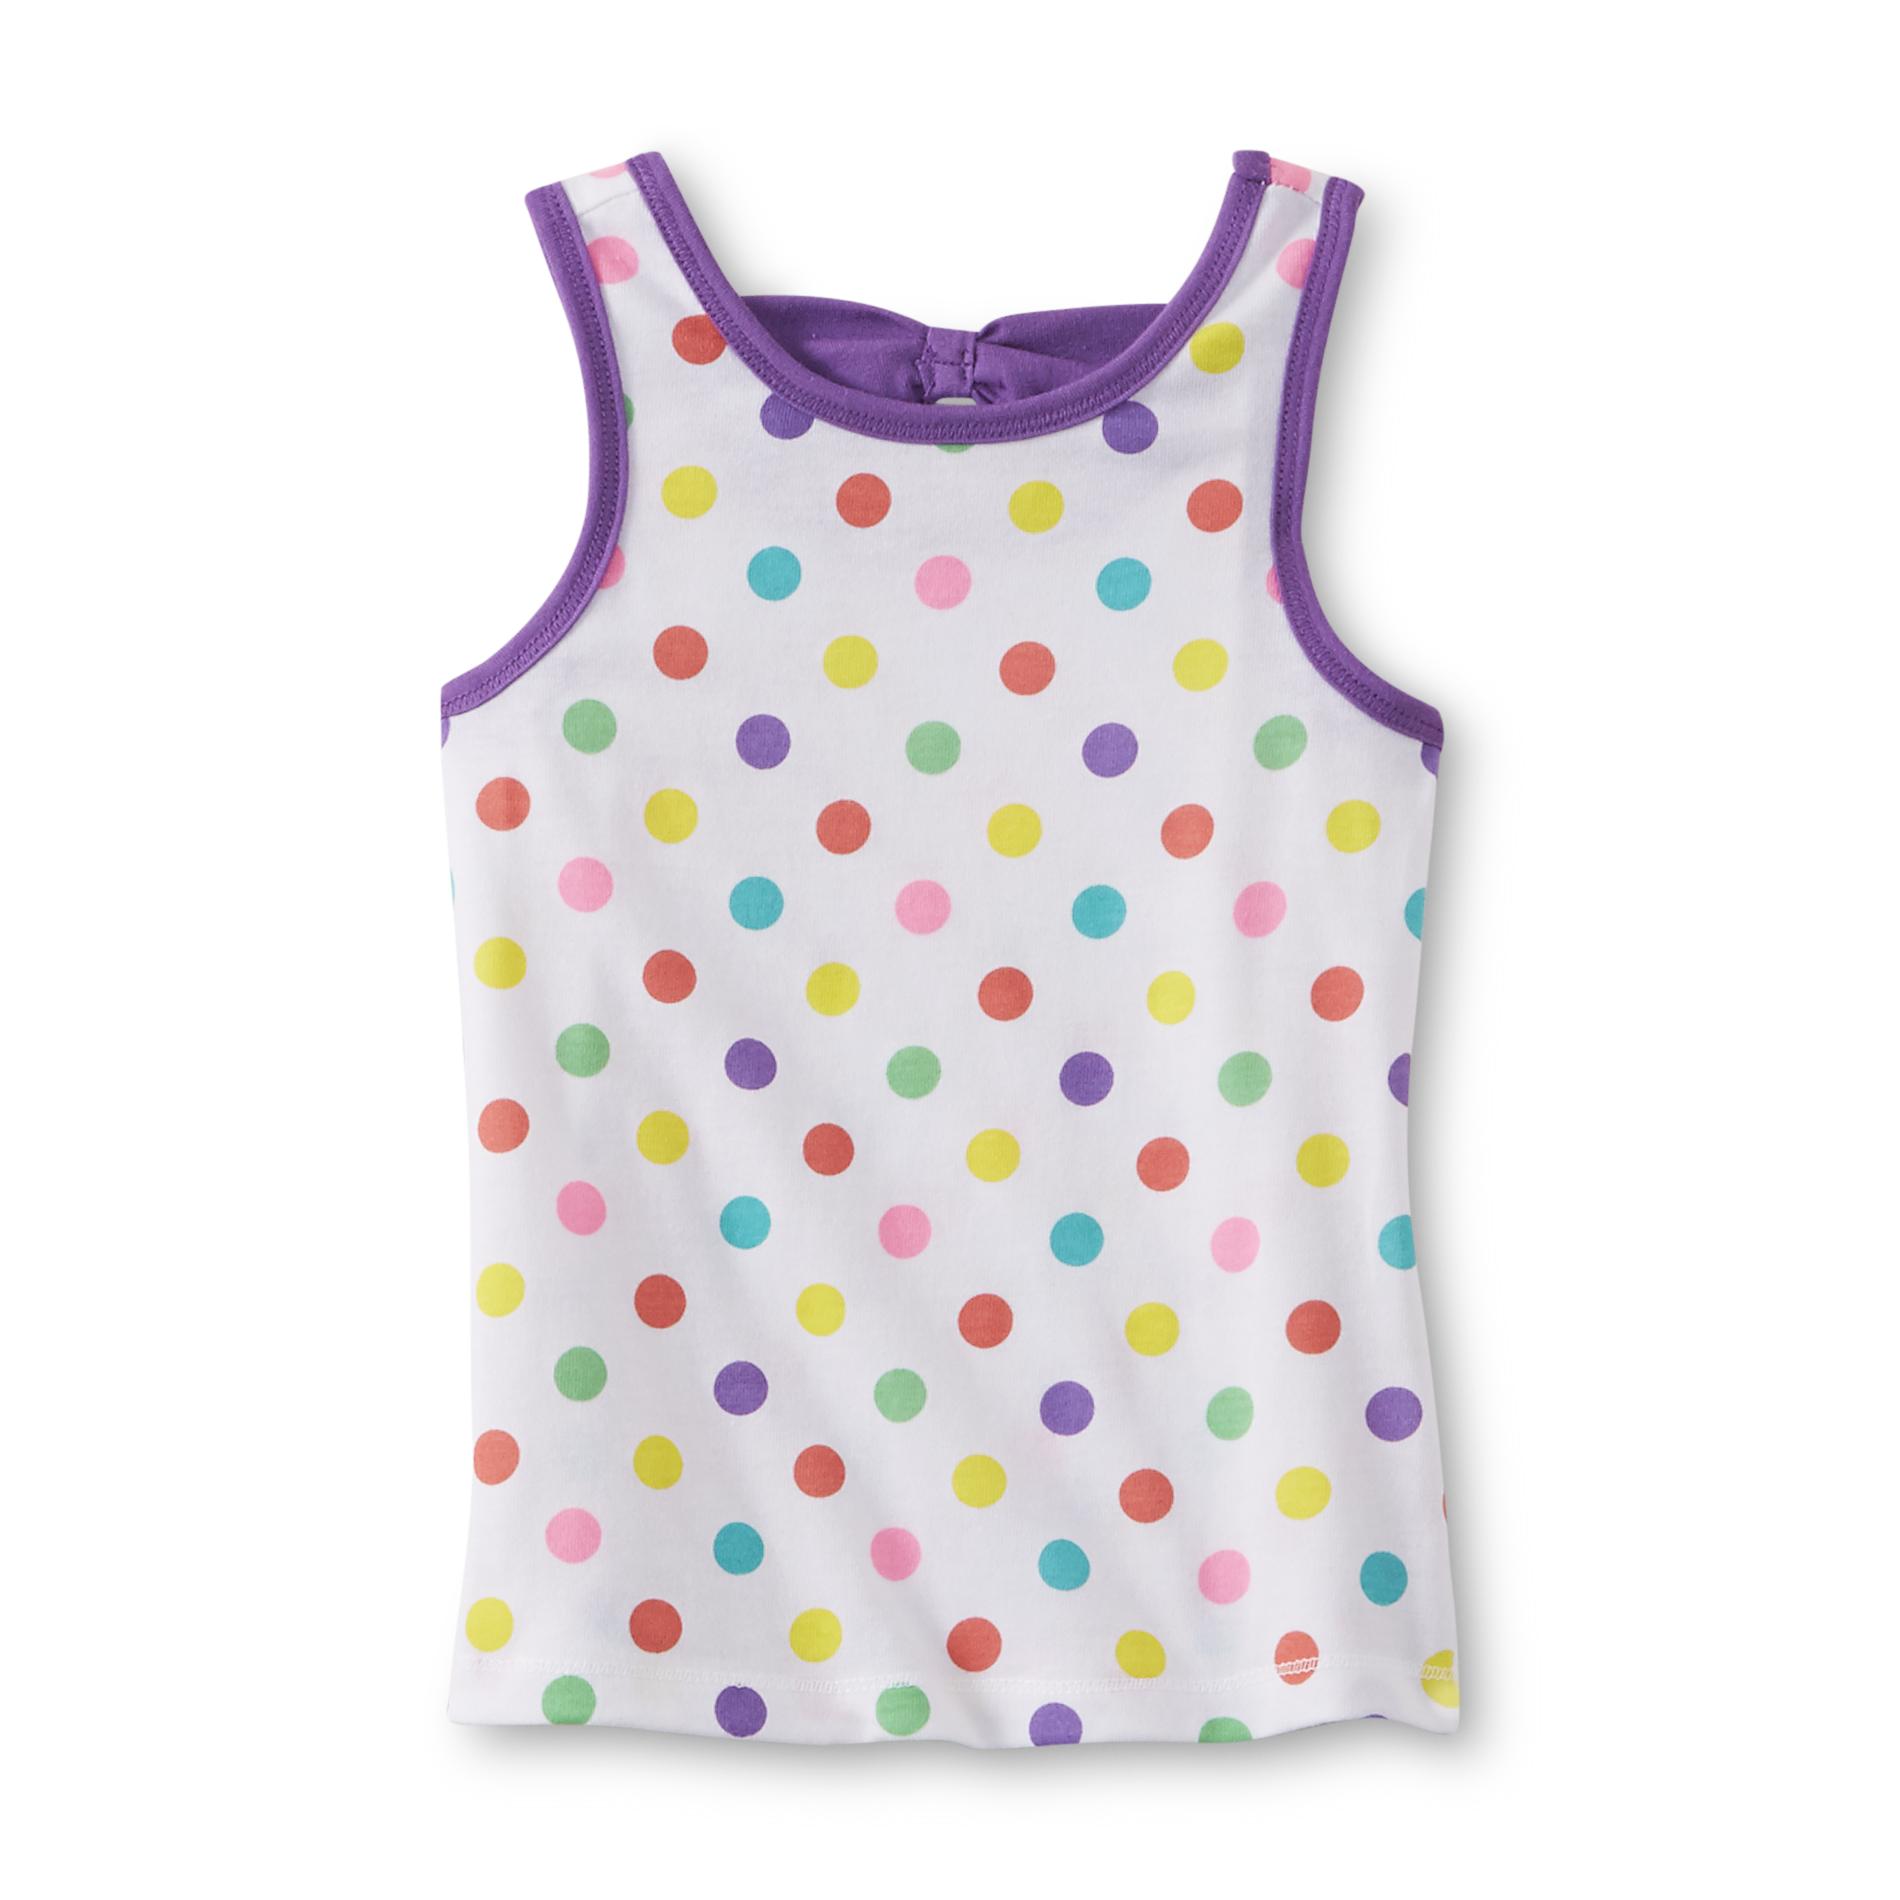 WonderKids Infant & Toddler Girl's Bow-Back Tank Top - Polka Dot